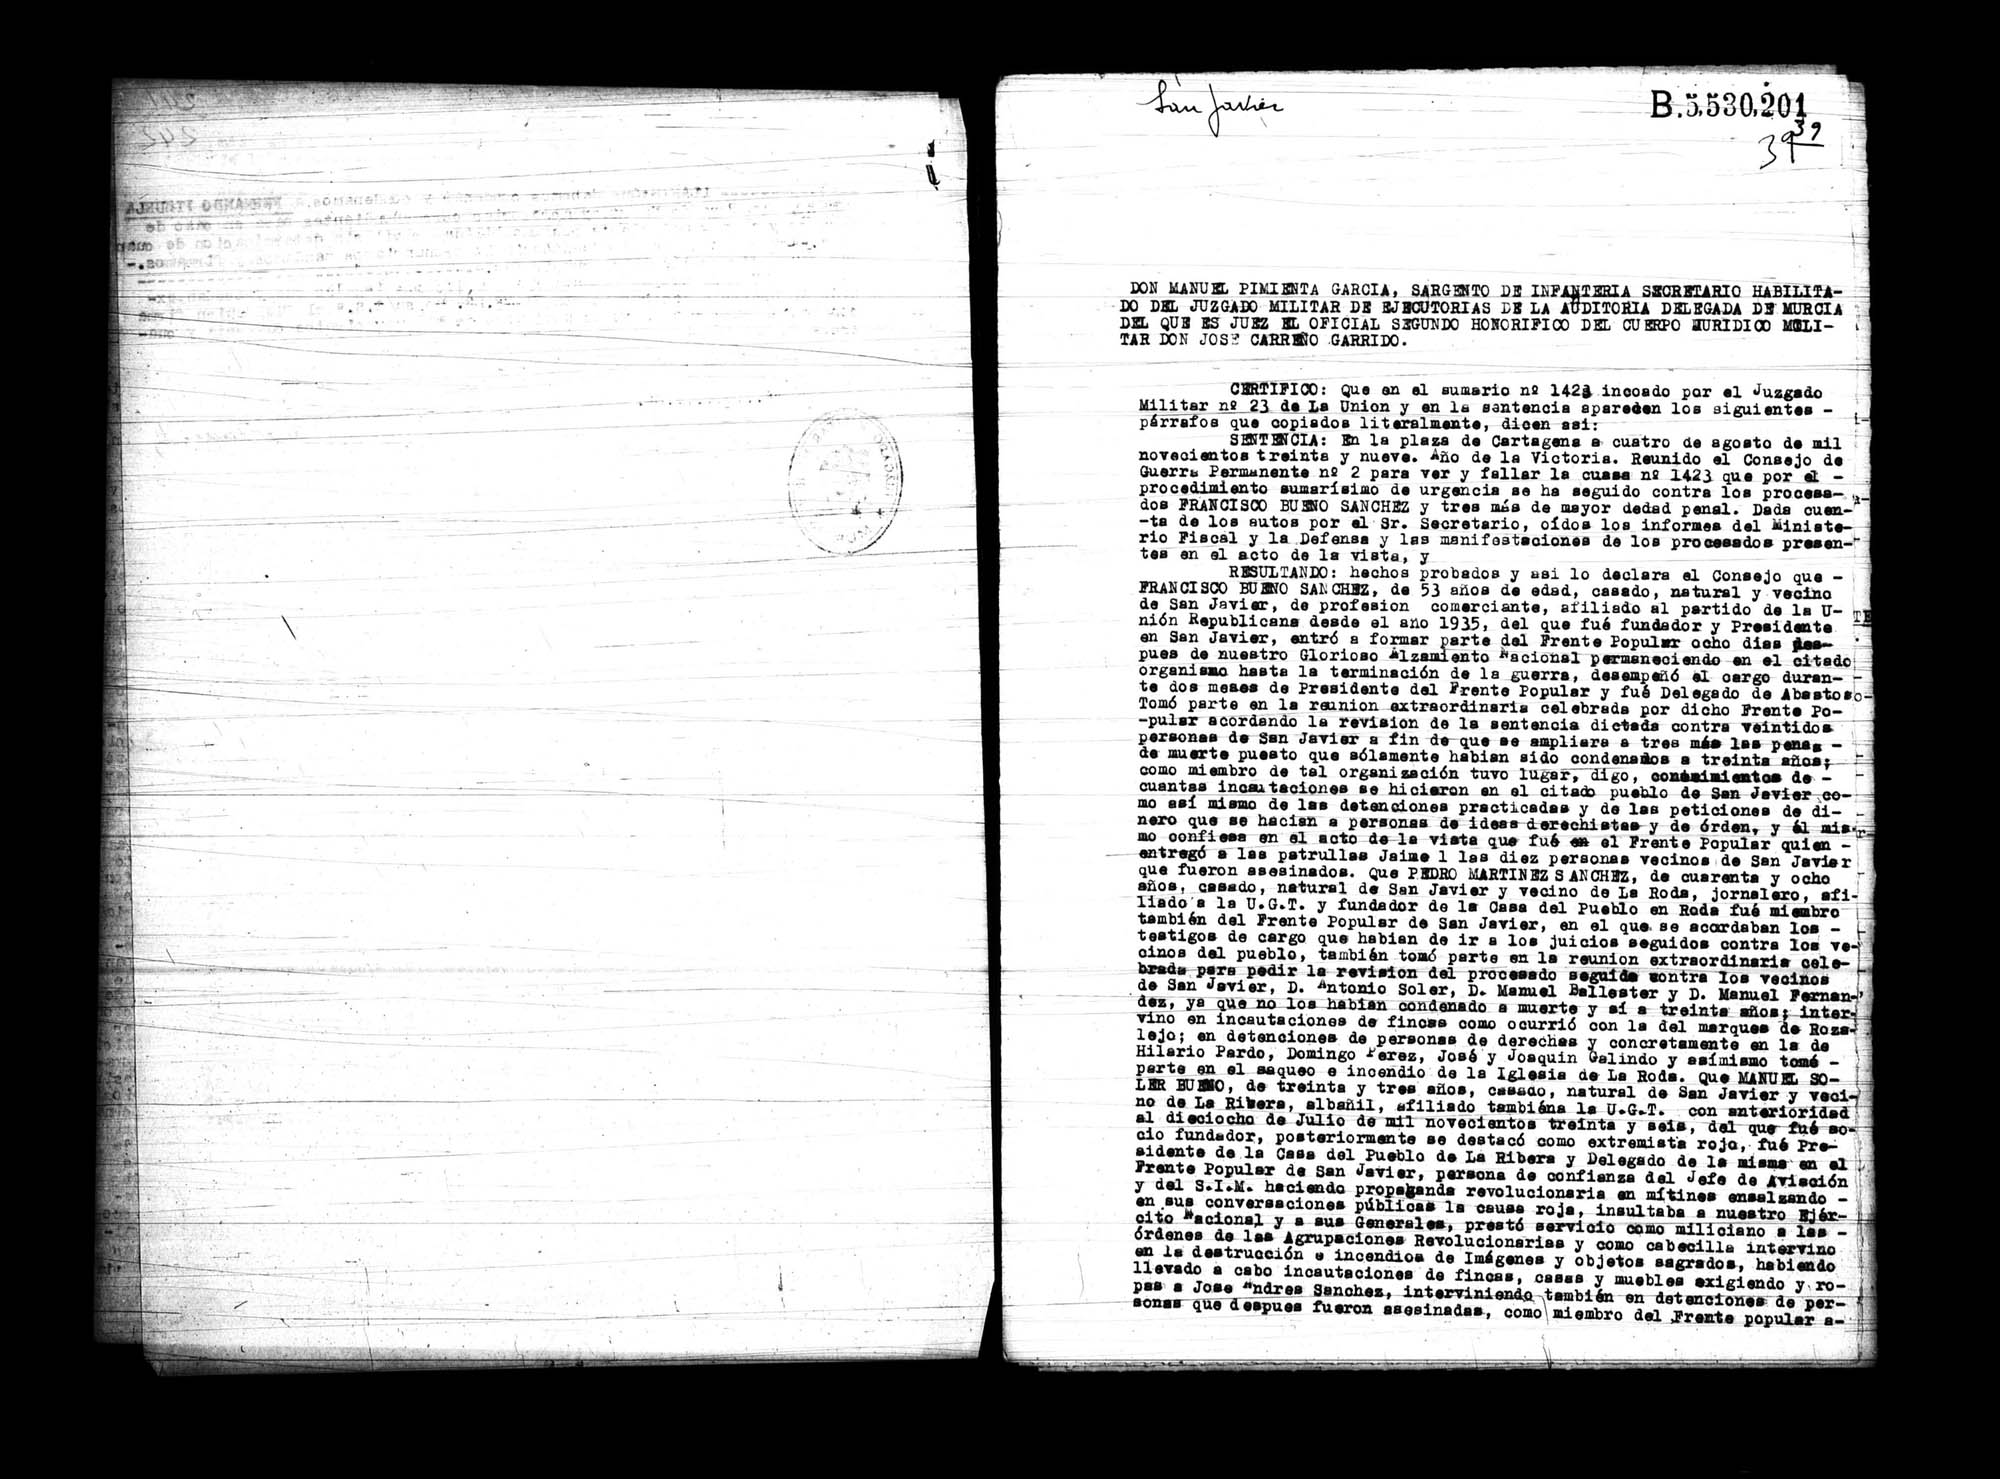 Certificado de la sentencia pronunciada contra Francisco Bueno Sánchez, Pedro Martínez Sánchez y Manuel Soler Bueno, causa 1423, el 4 de agosto de 1939 en Cartagena.